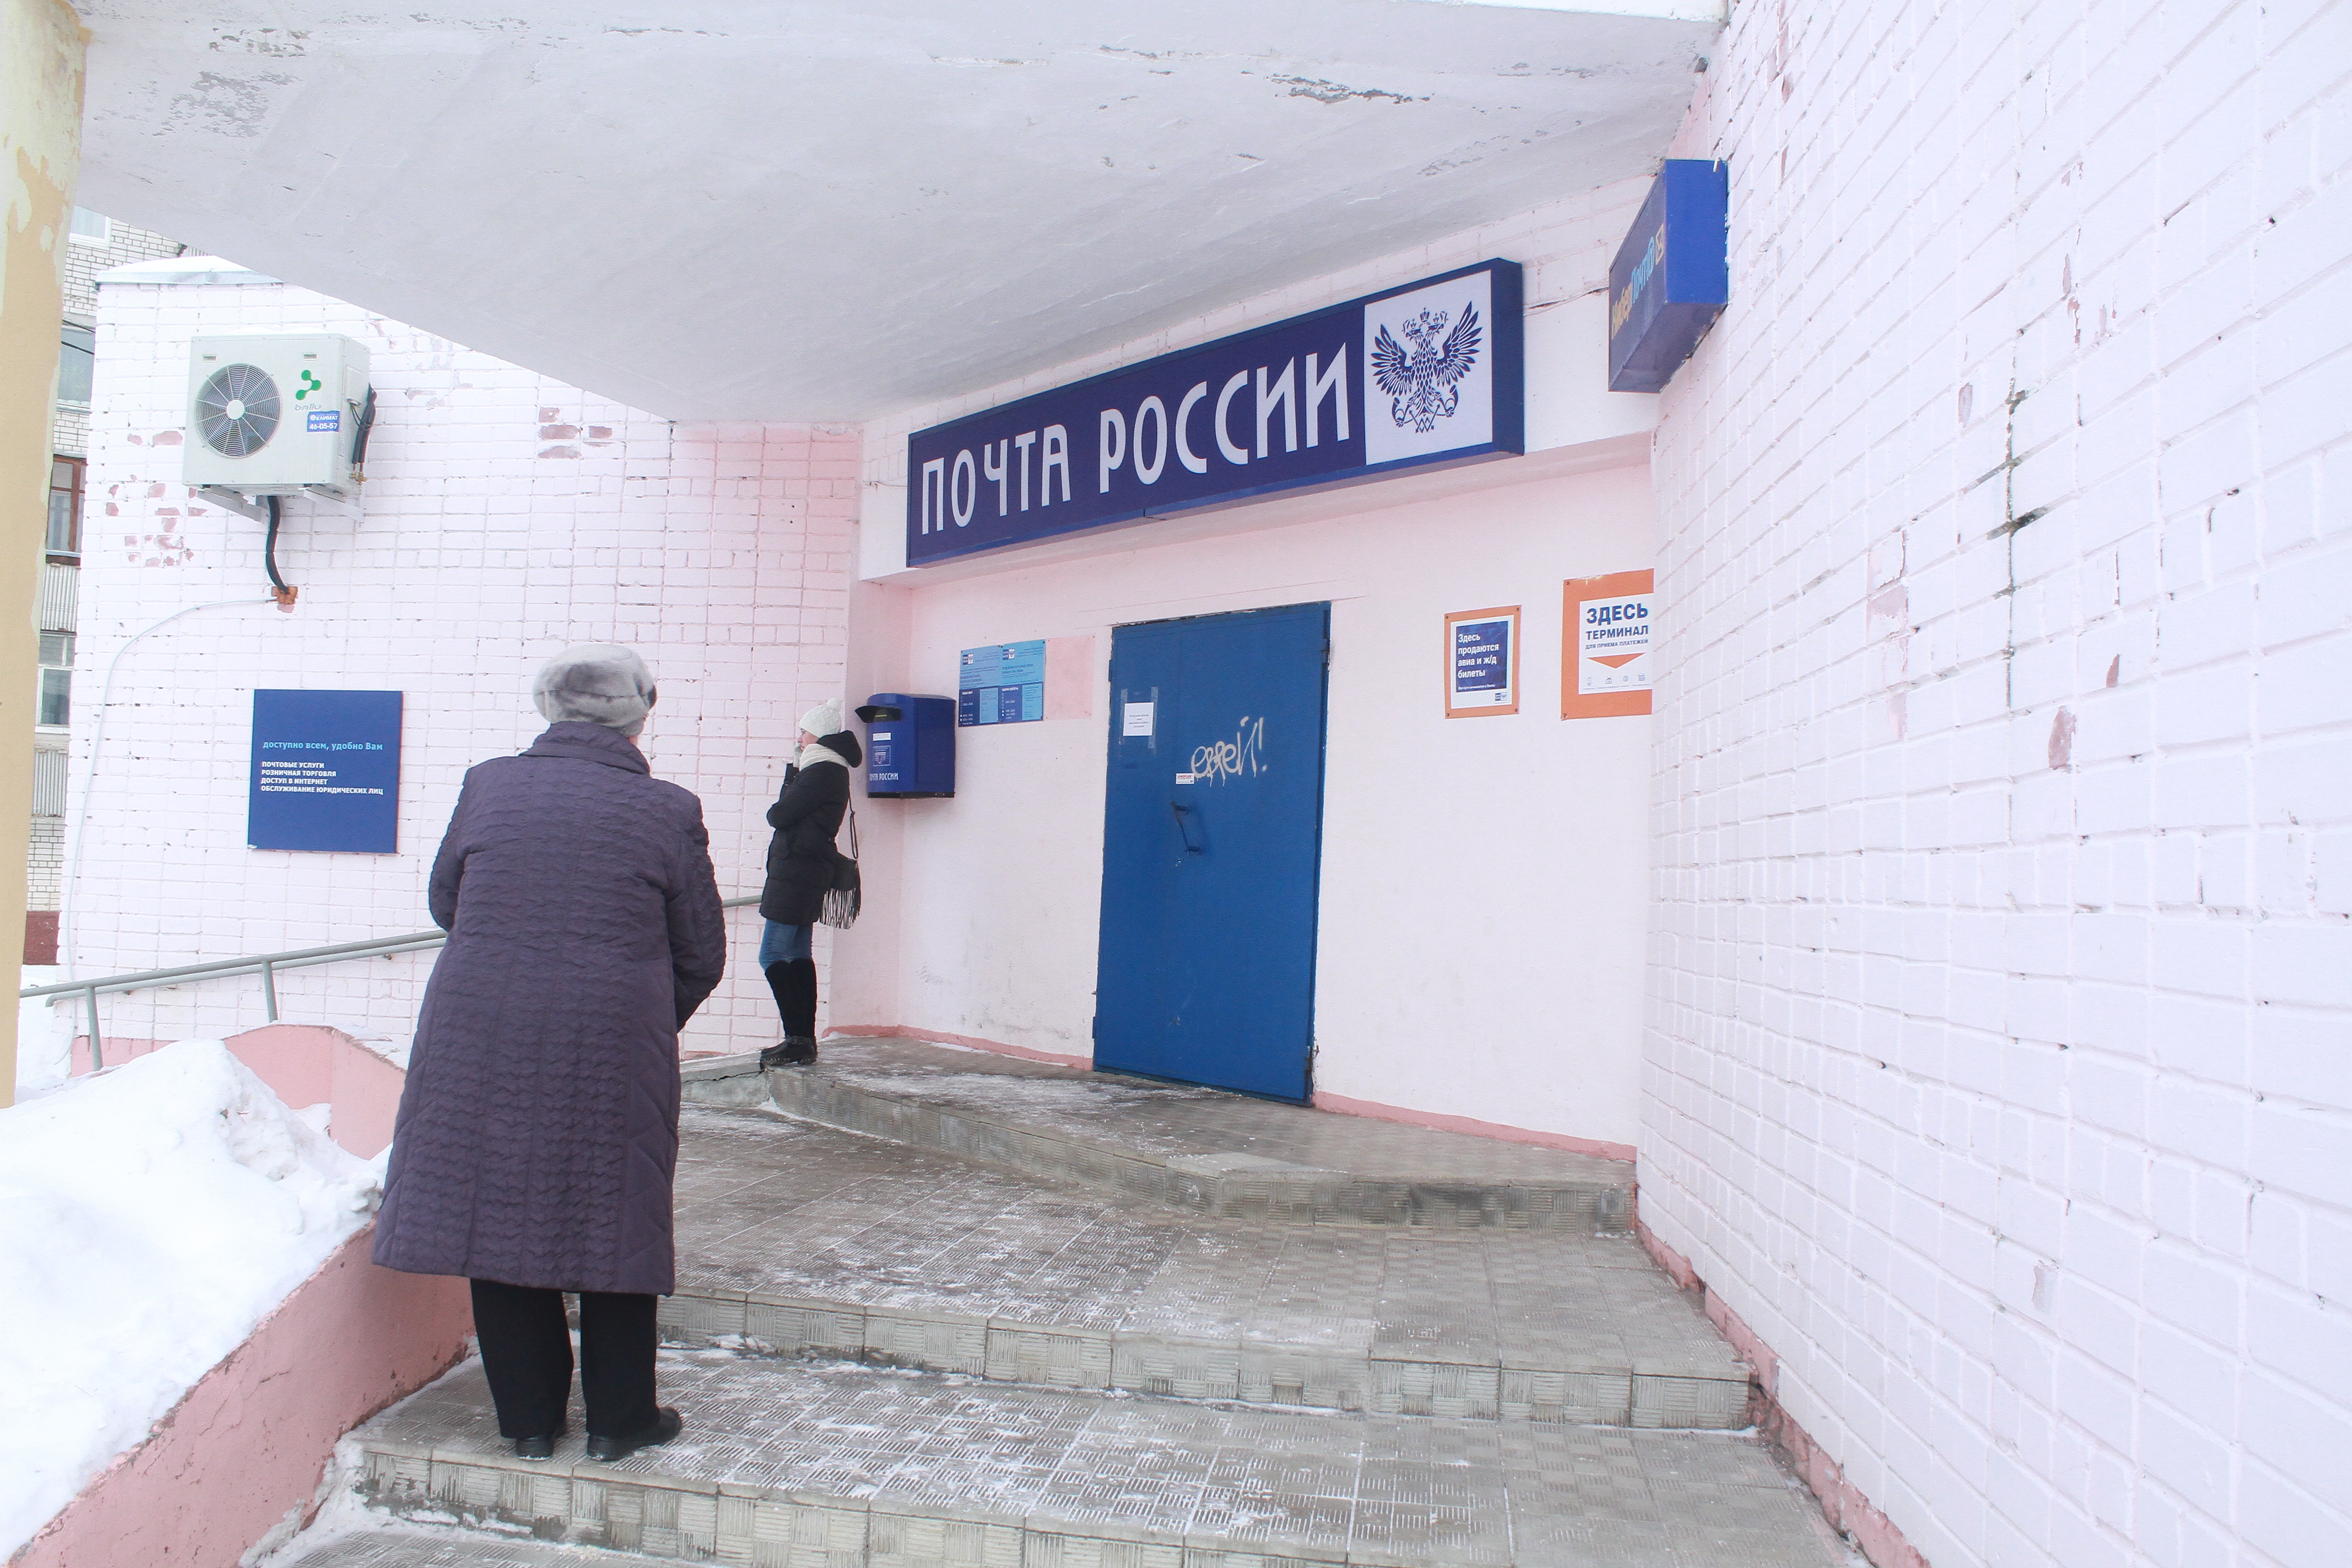 Начальник отделения Почты украла у пенсионеров Пензы более 100 тысяч рублей